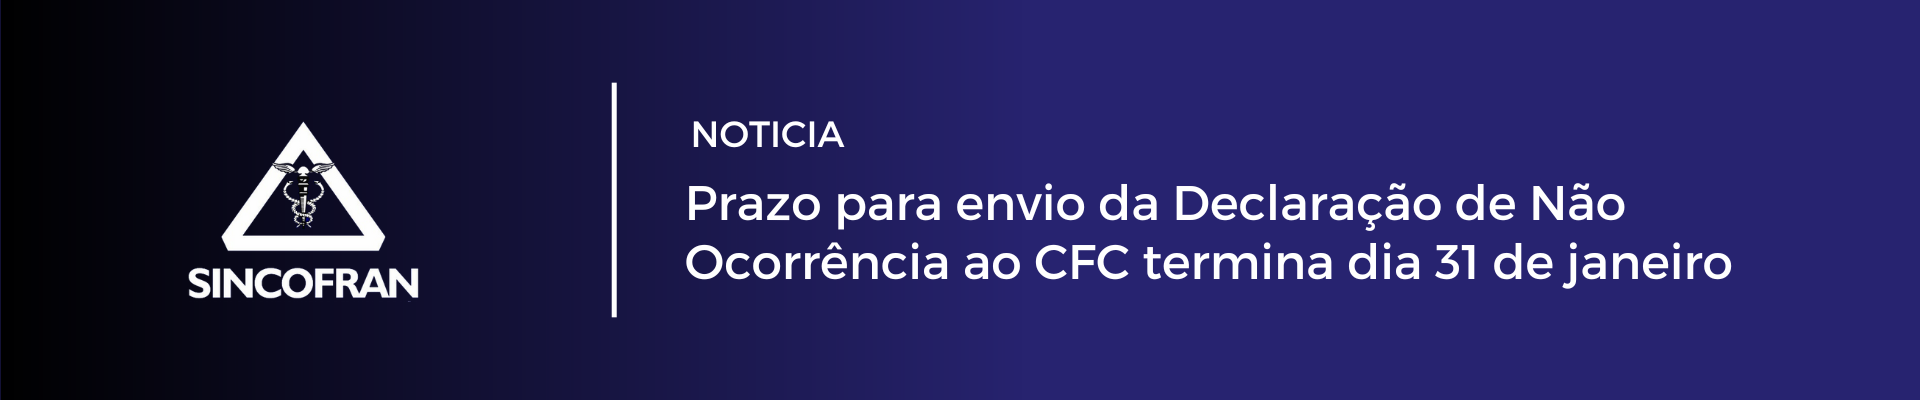 NOTICIA: Prazo para envio da Declaração de Não Ocorrência ao CFC termina dia 31 de janeiro